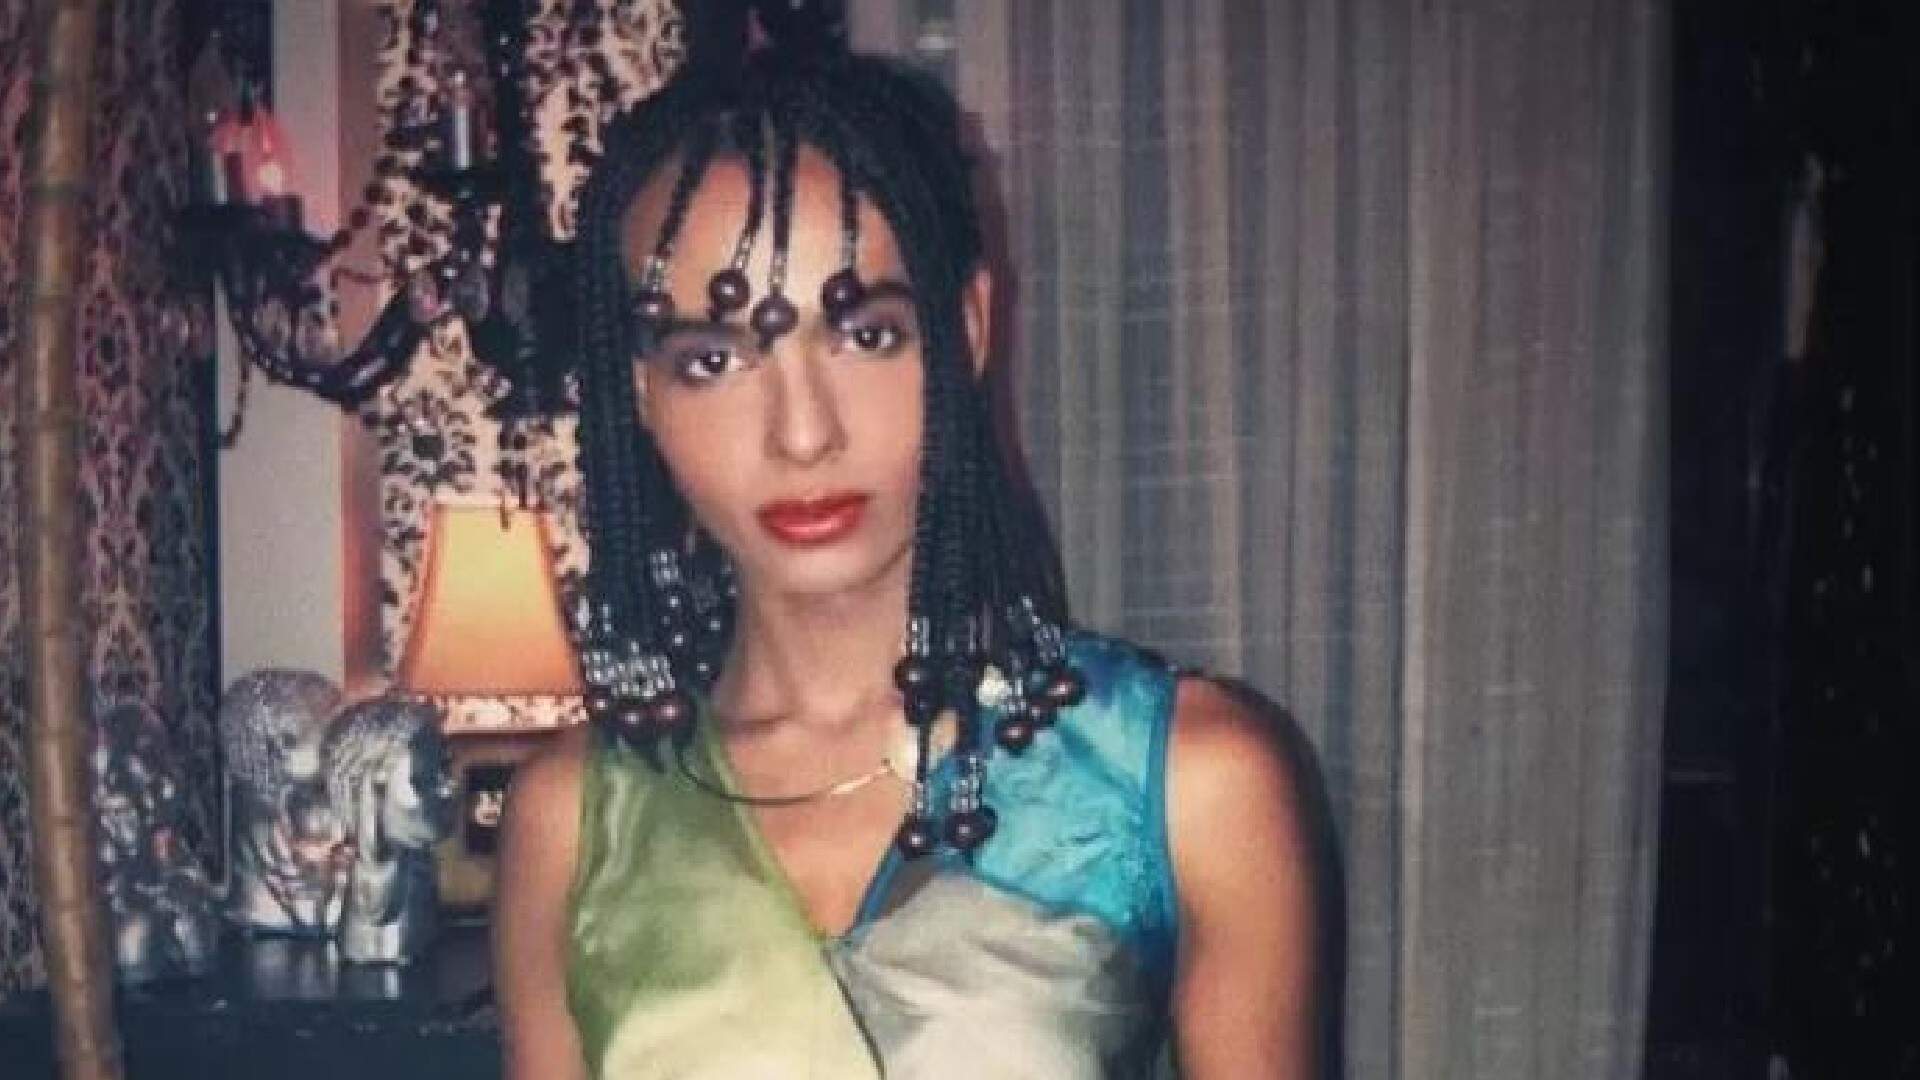 Ex-cantor gospel se declara como mulher trans: “quem realmente sou” - Metropolitana FM